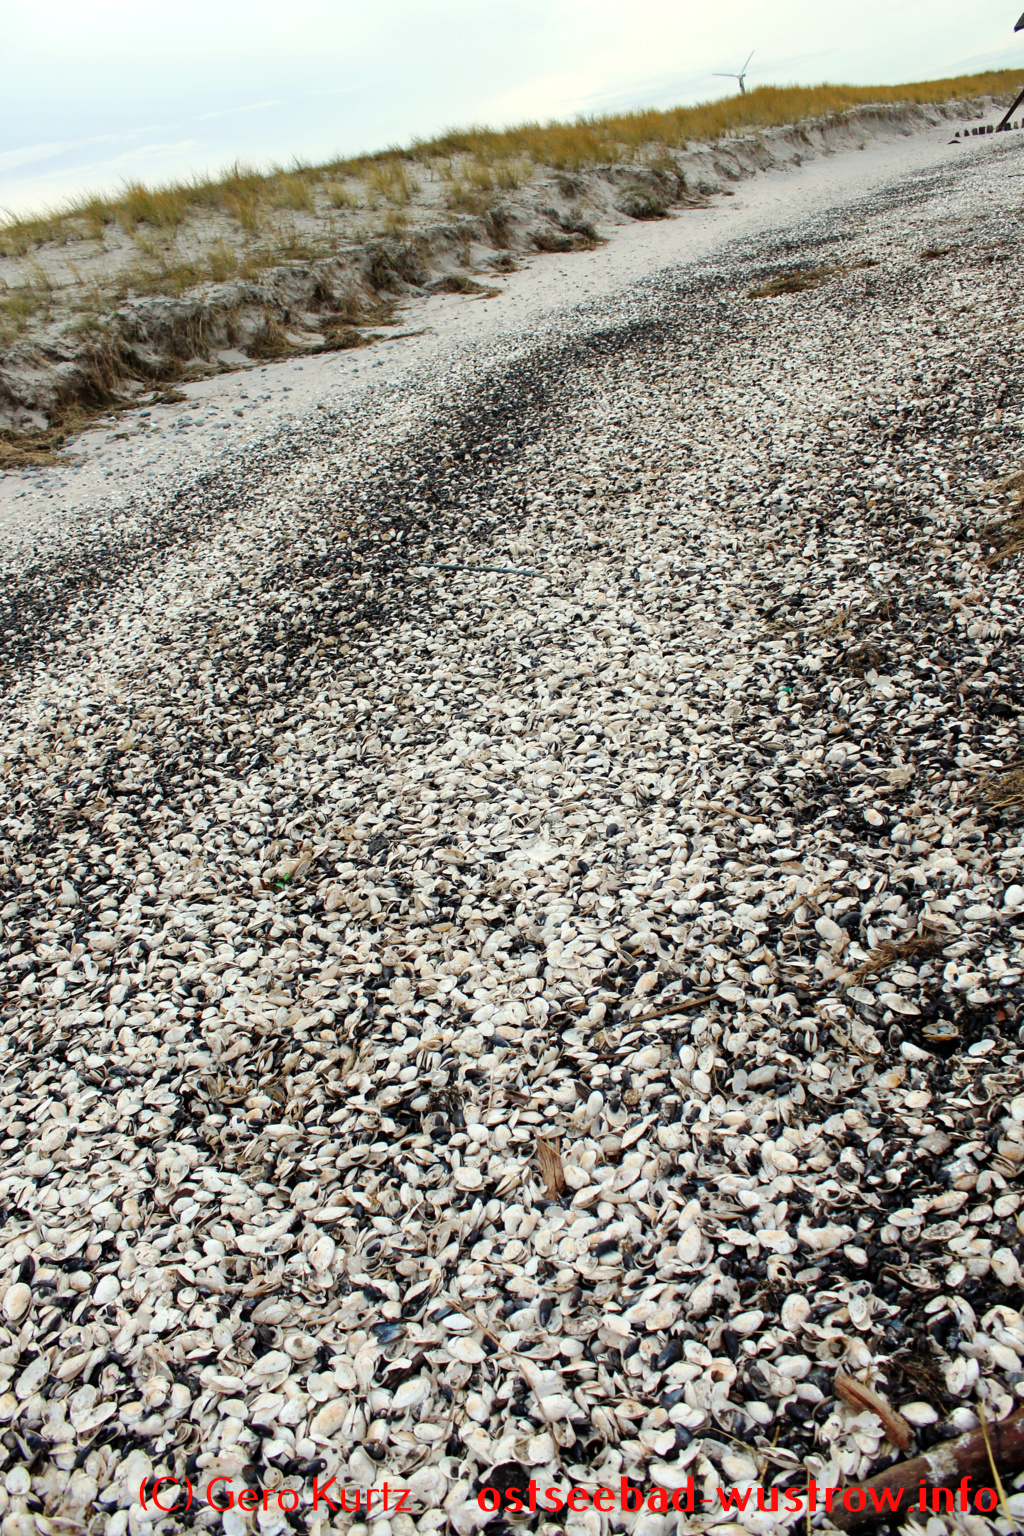 Ostsee Sandklaffmuschel - große Mengen Muscheln nach einem Sturm am Ufer